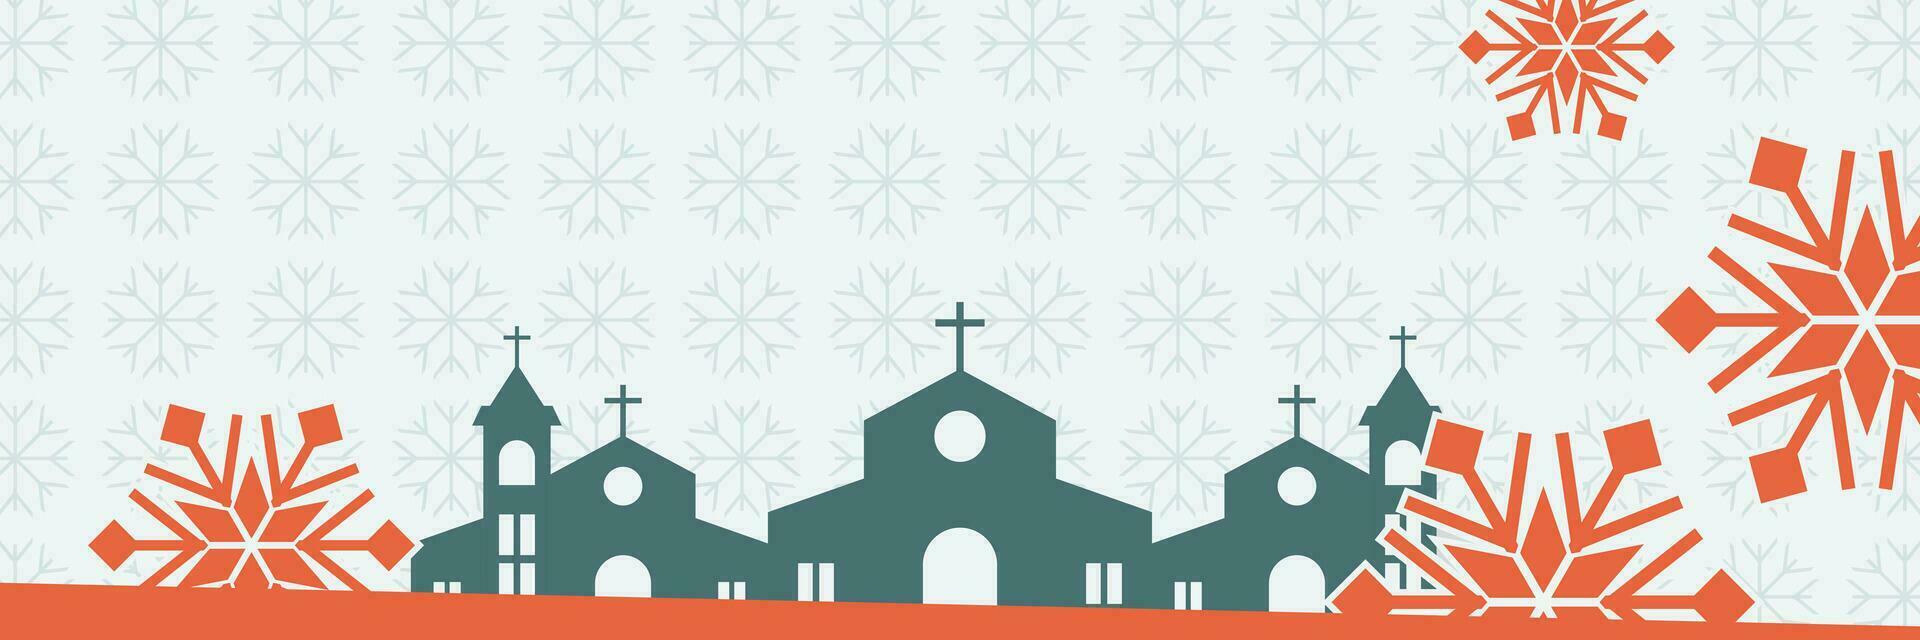 Natale sfondo con neve ornamenti e Chiesa silhouette. vettore modello per striscione, manifesto, sociale media, cristiano vacanza saluto carta.